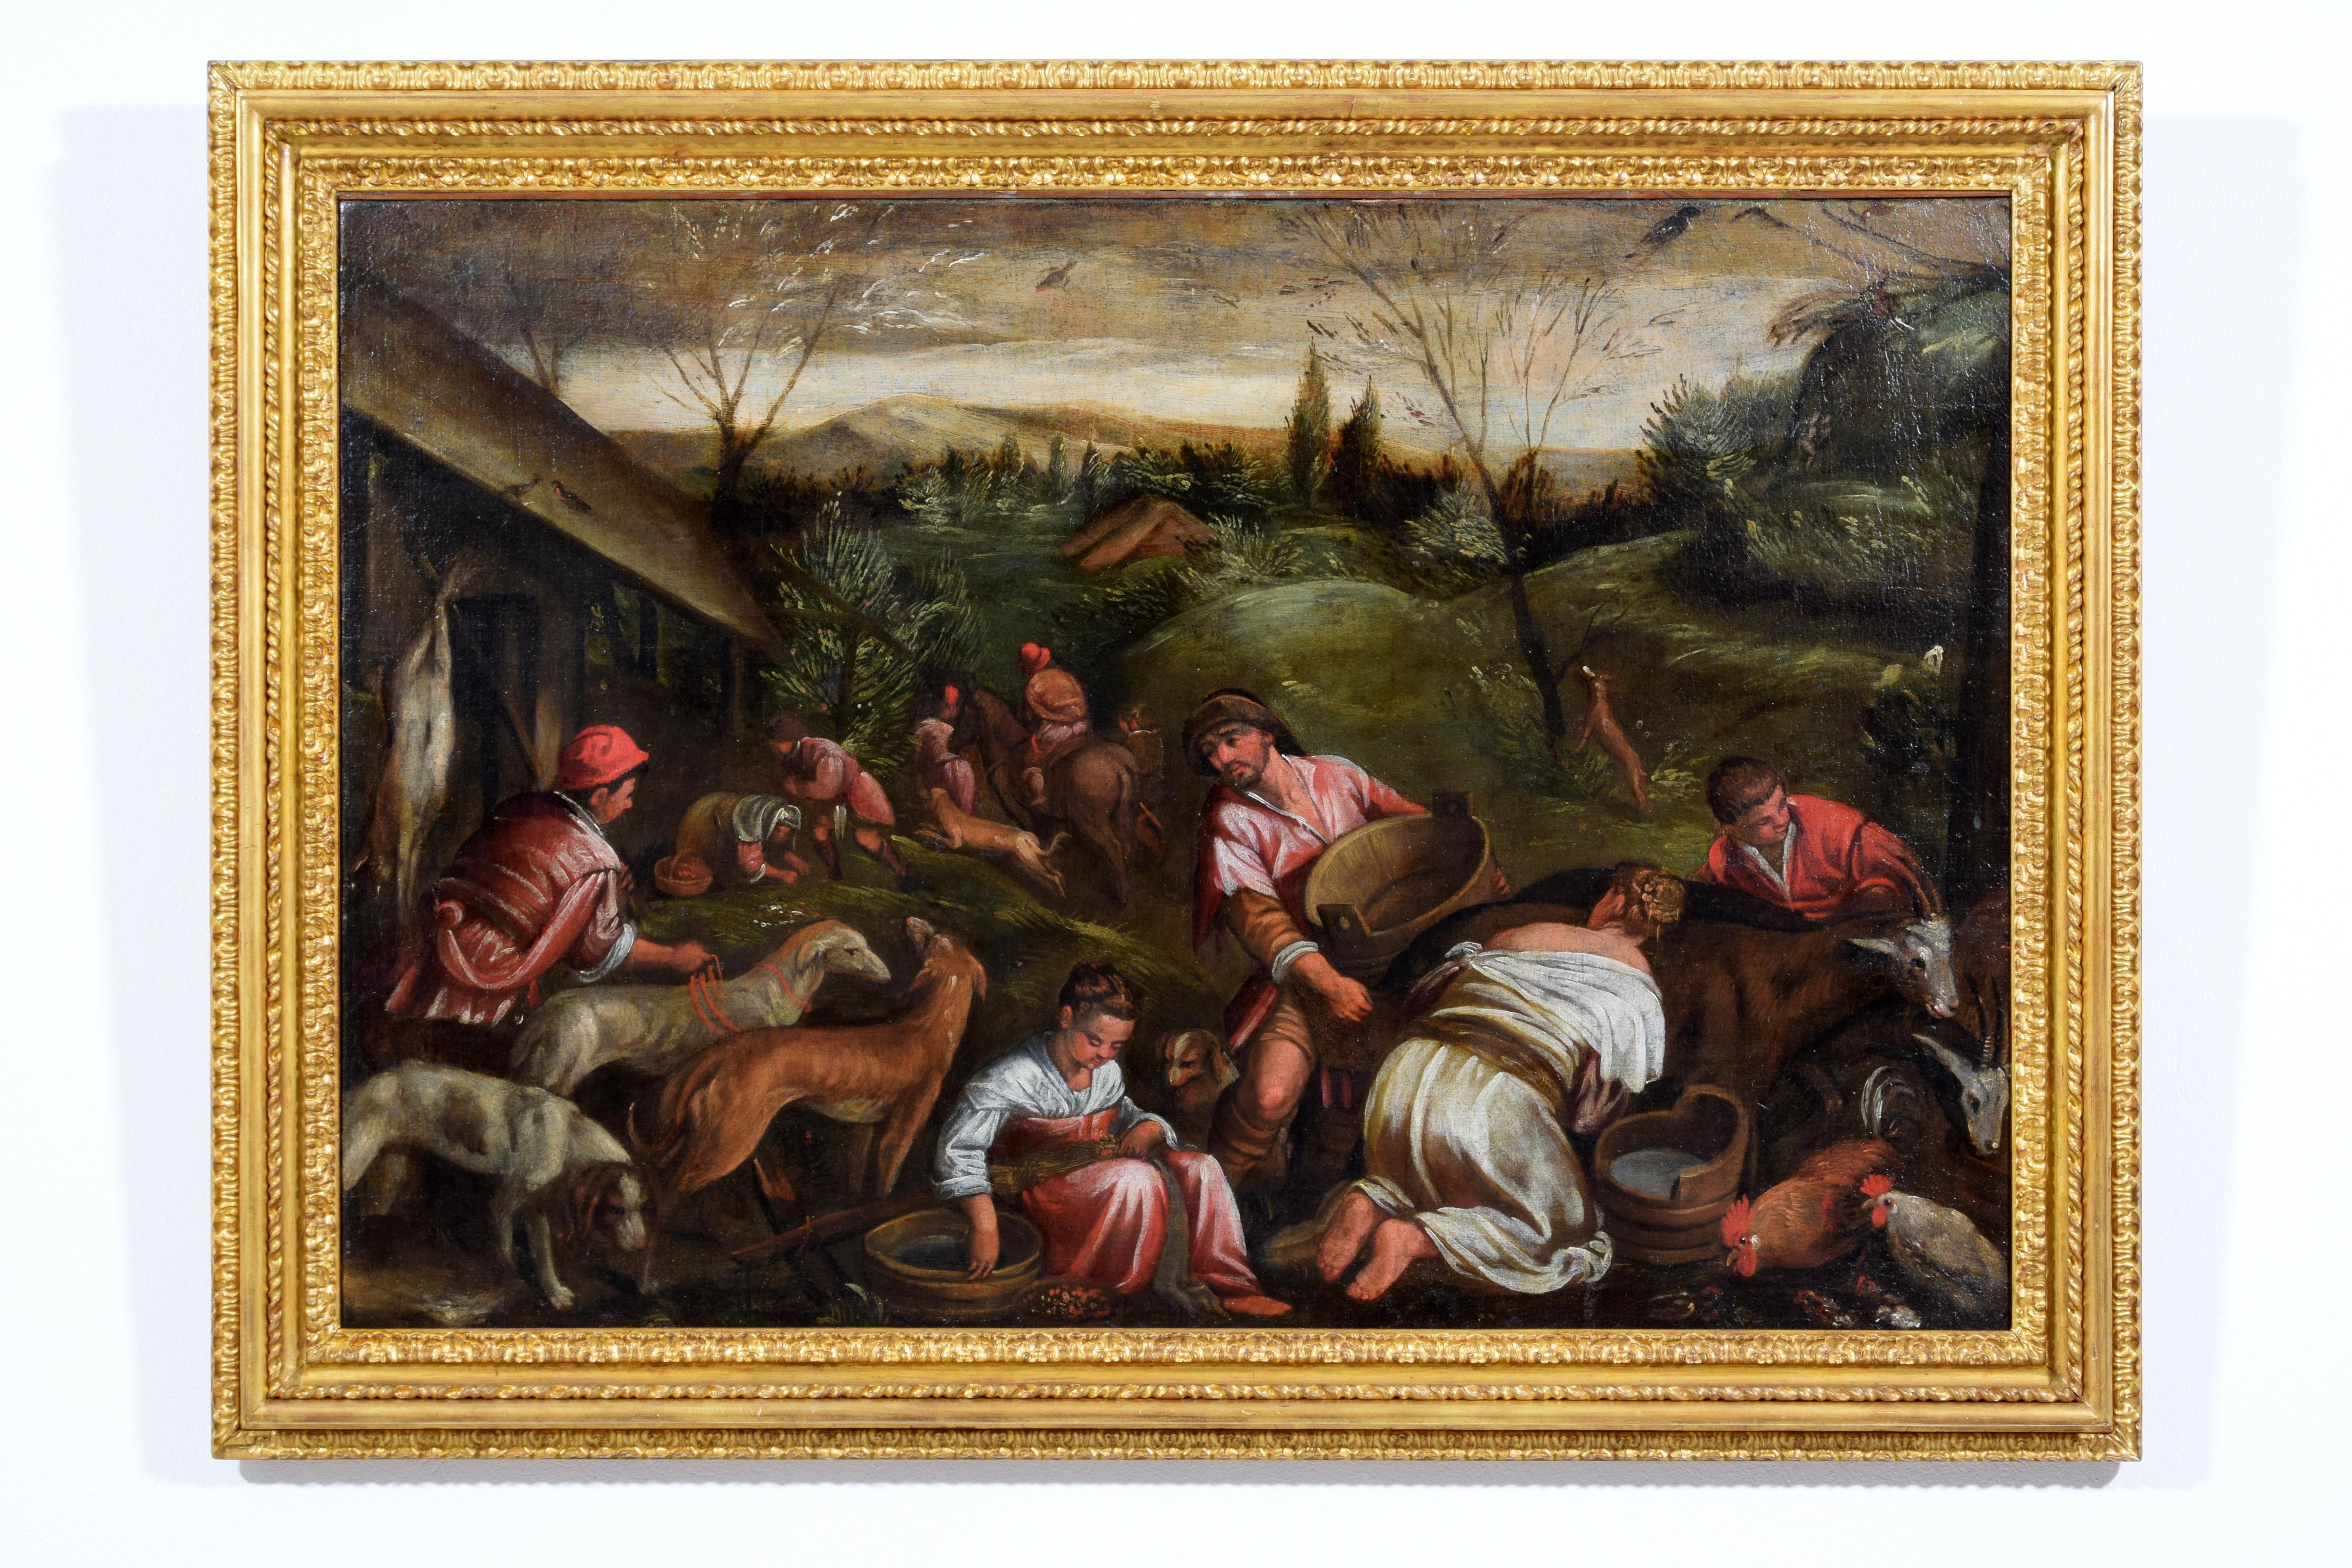 Anhänger von Jacopo Da Ponte, genannt Jacopo Bassano (Bassano del Grappa, um 1510 - Bassano del Grappa, 13. Februar 1592), 17.
Allegorie des Frühlings
Maße: Mit Rahmen: cm B 122,5 x H 89 x T 6,5. Leinwand: cm B 106,5 x H 72

Das Gemälde, von großer